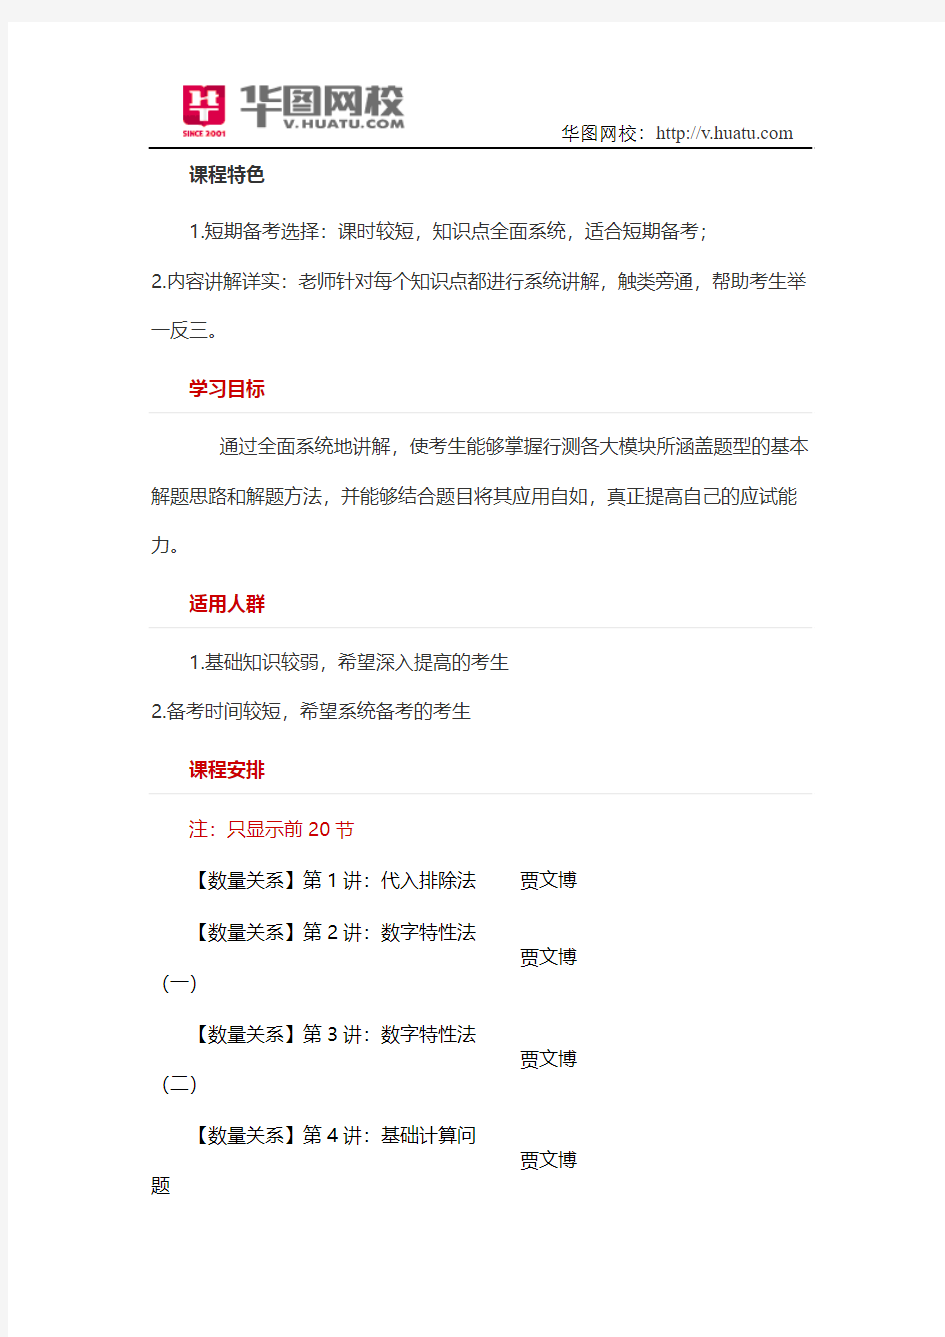 2014年江苏张家港市卫生事业单位招聘辅导课程